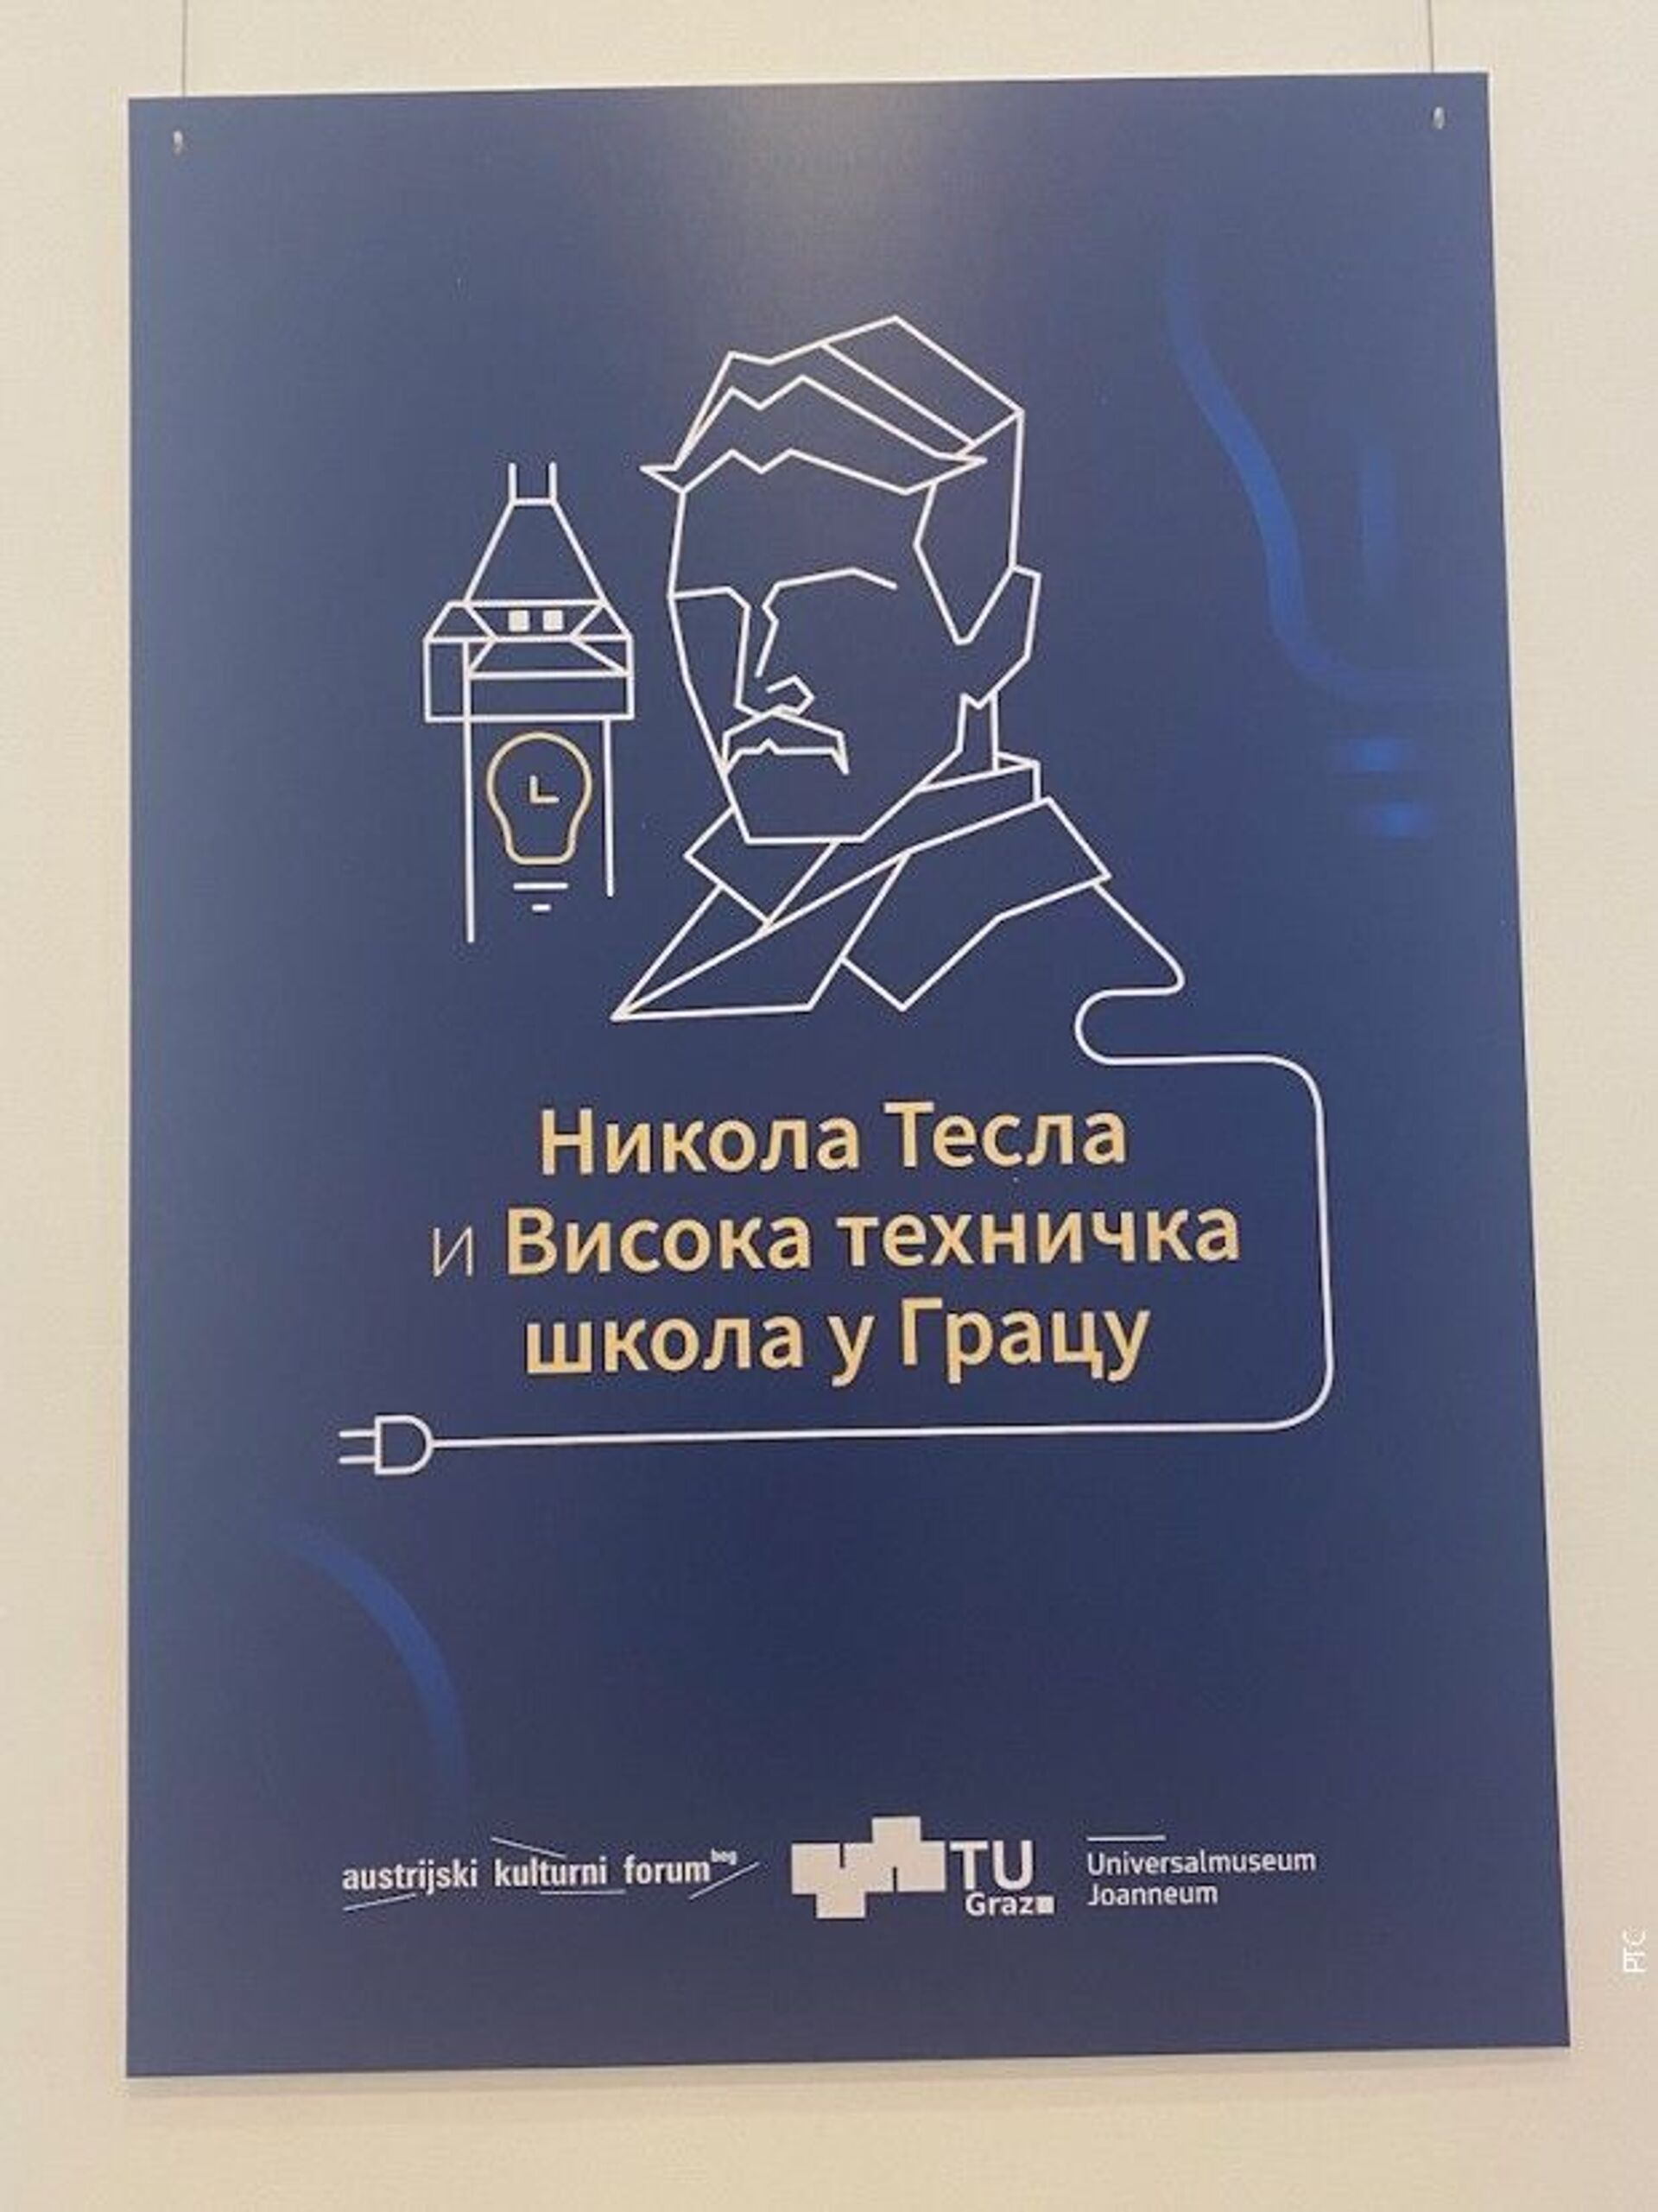 Изложба „Никола Тесла и Висока техничка школа у Грацу“ биће отворена до 24. јула - Sputnik Србија, 1920, 13.07.2021